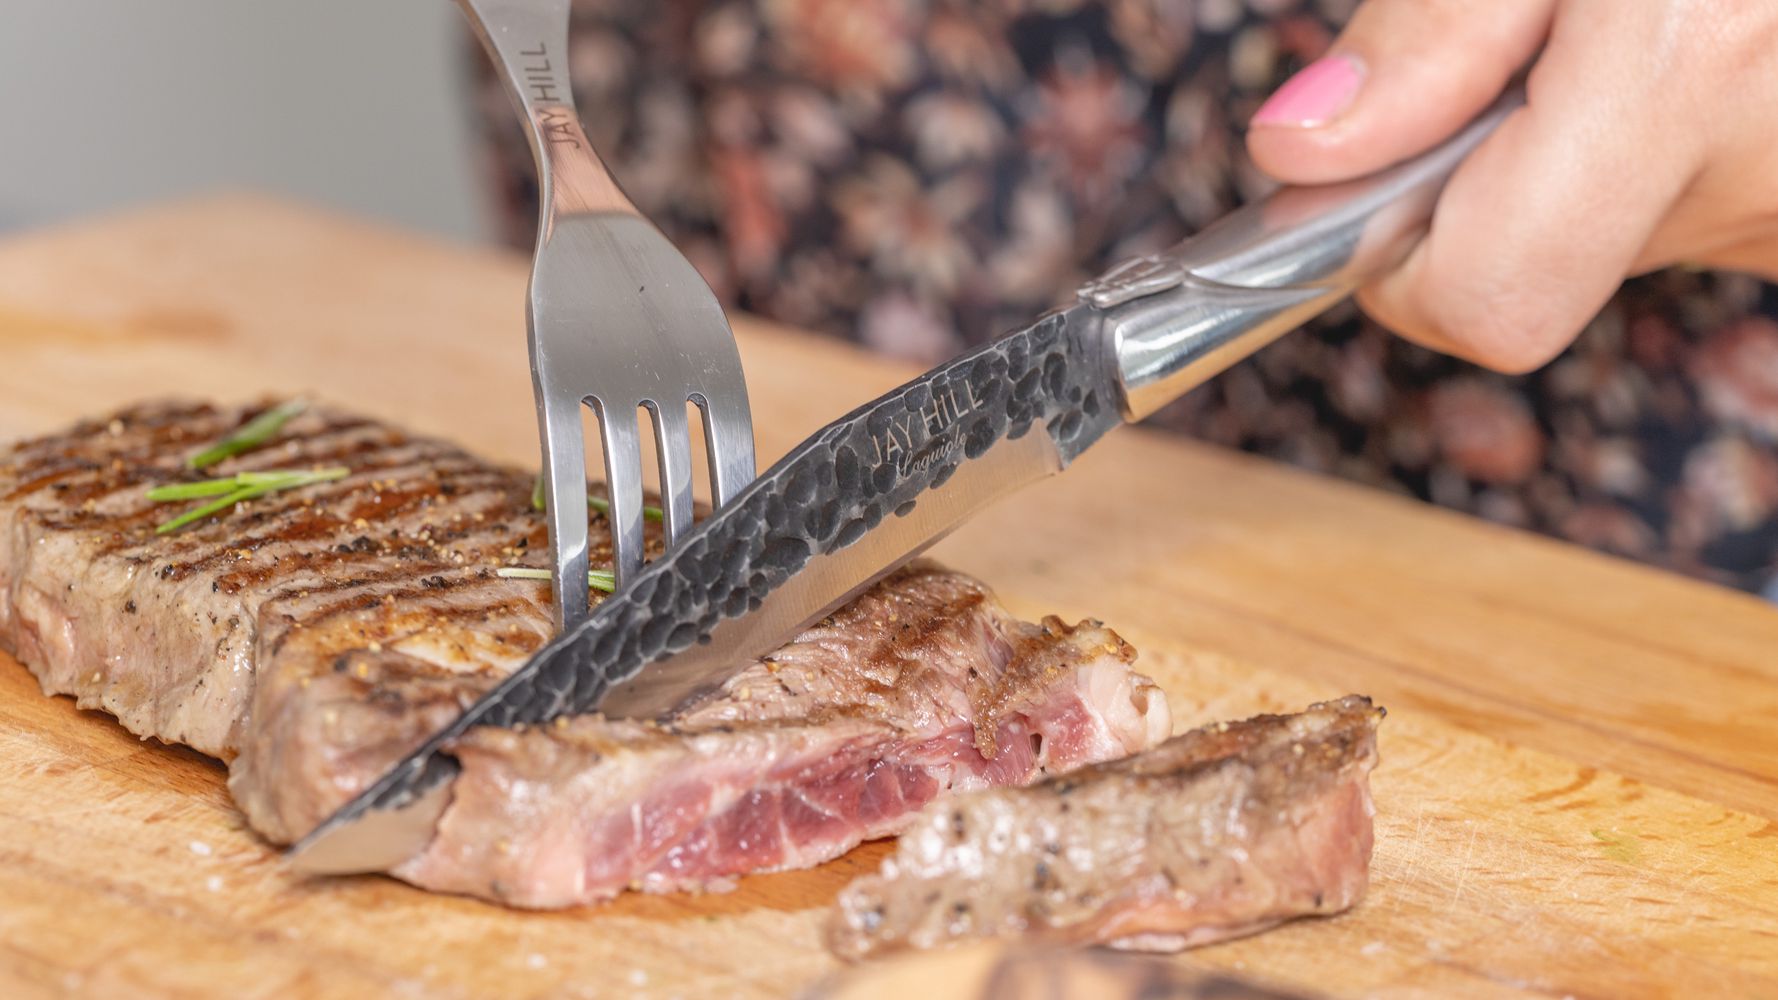 Couteau à steak Laguiole en acier inoxydable, couverts noirs